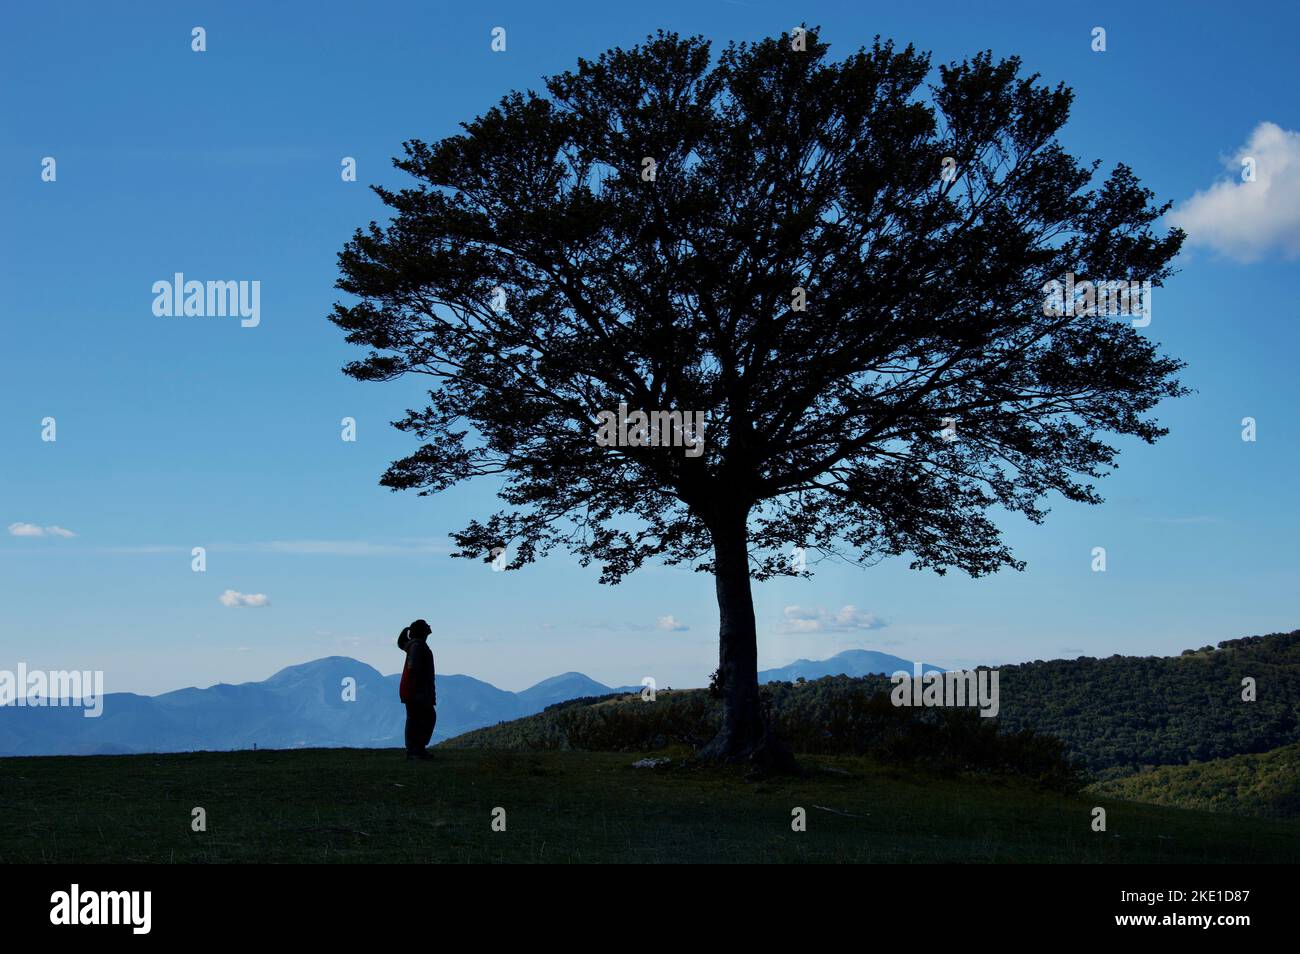 Girl and tree silhouette on dreamy mountain range horizon Stock Photo